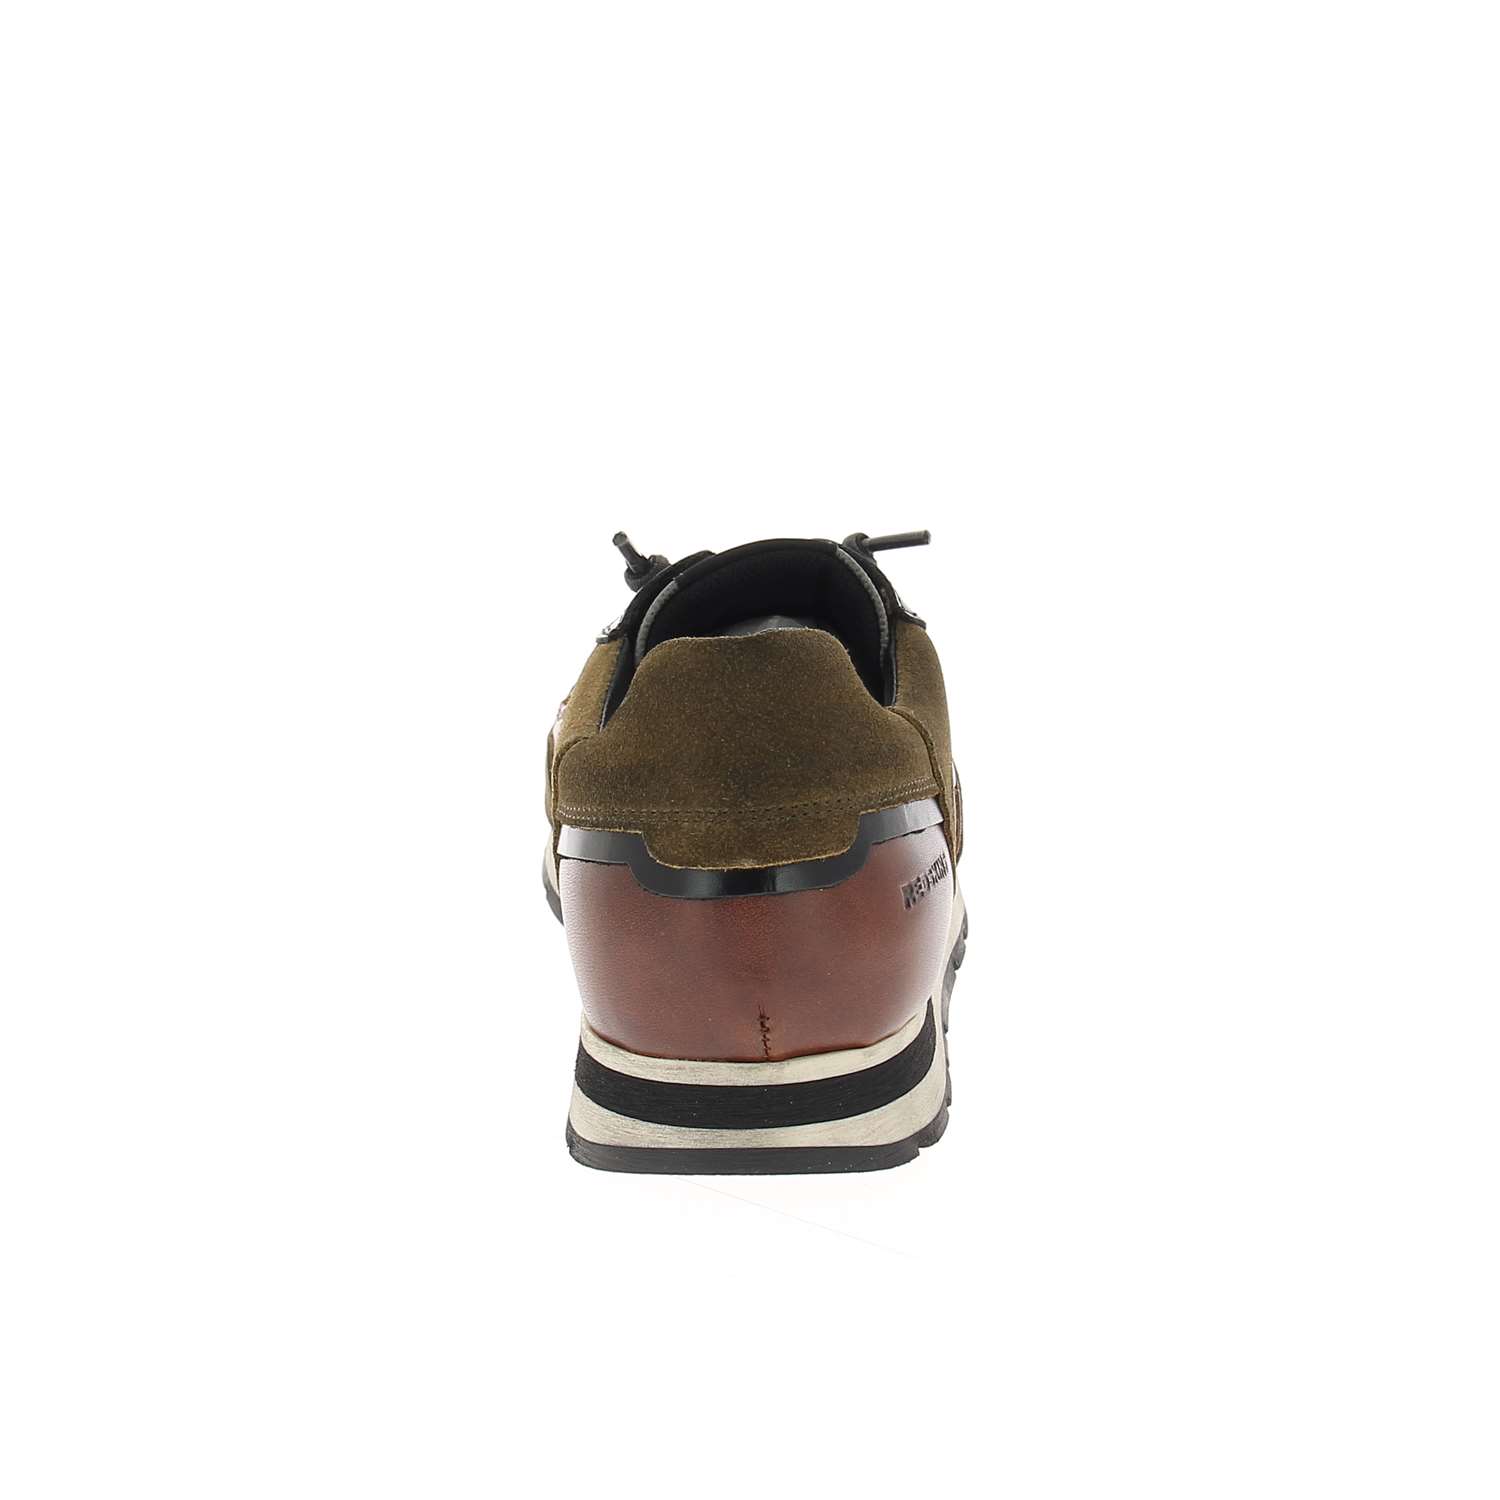 04 - STITCH 2 - CLEON - Chaussures à lacets - Croûte de cuir